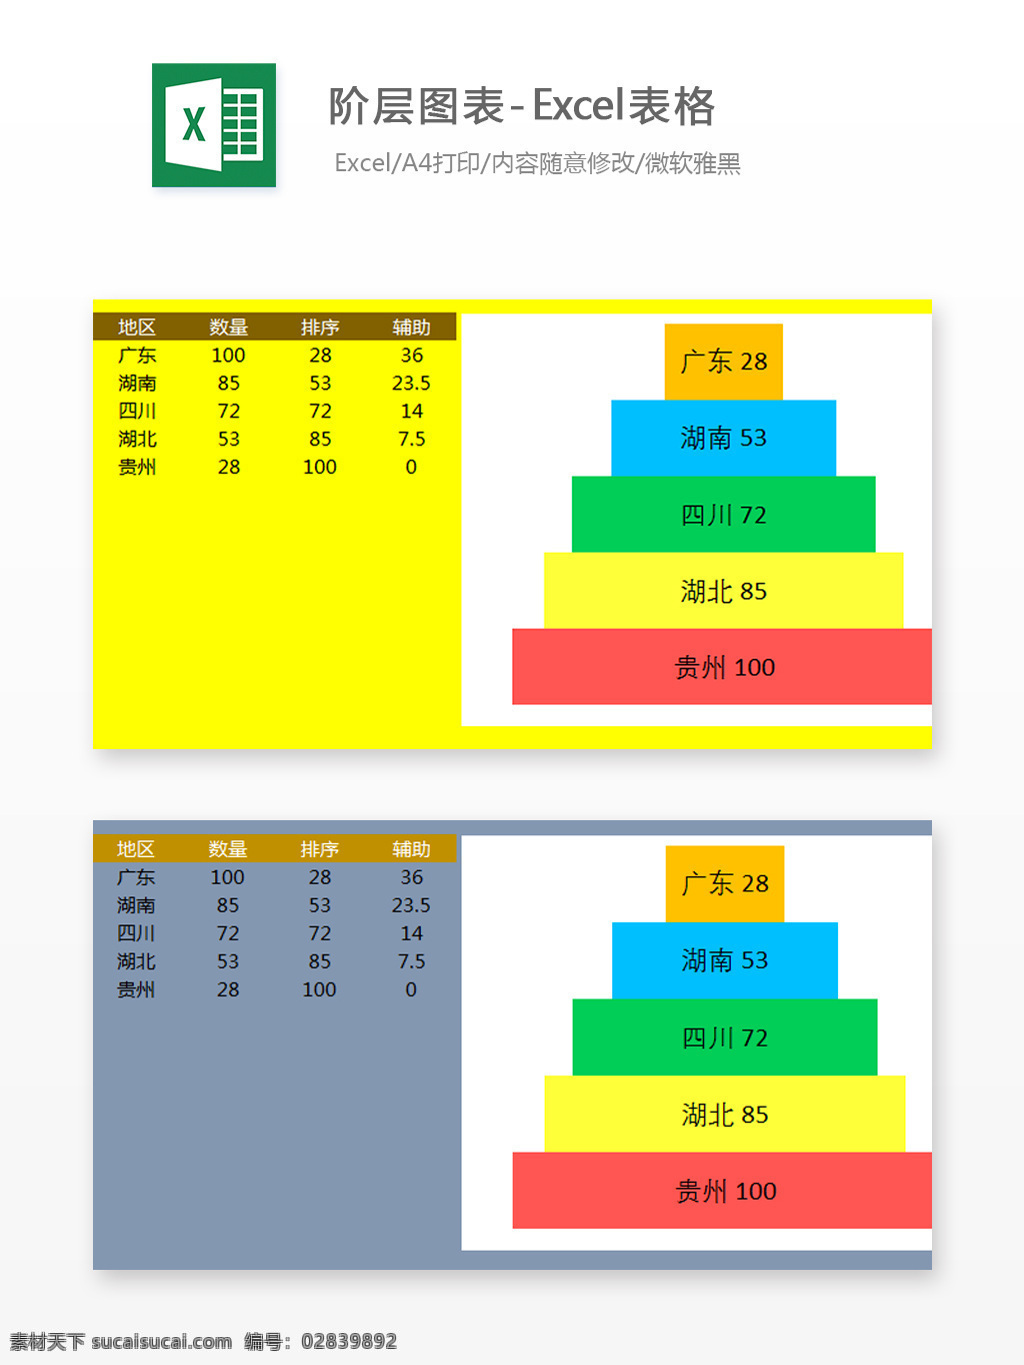 阶层 图表 excel 表格 模板 表格设计 表格模板 图标素材 图标设计 自动计算 企业表格设计 阶层图表